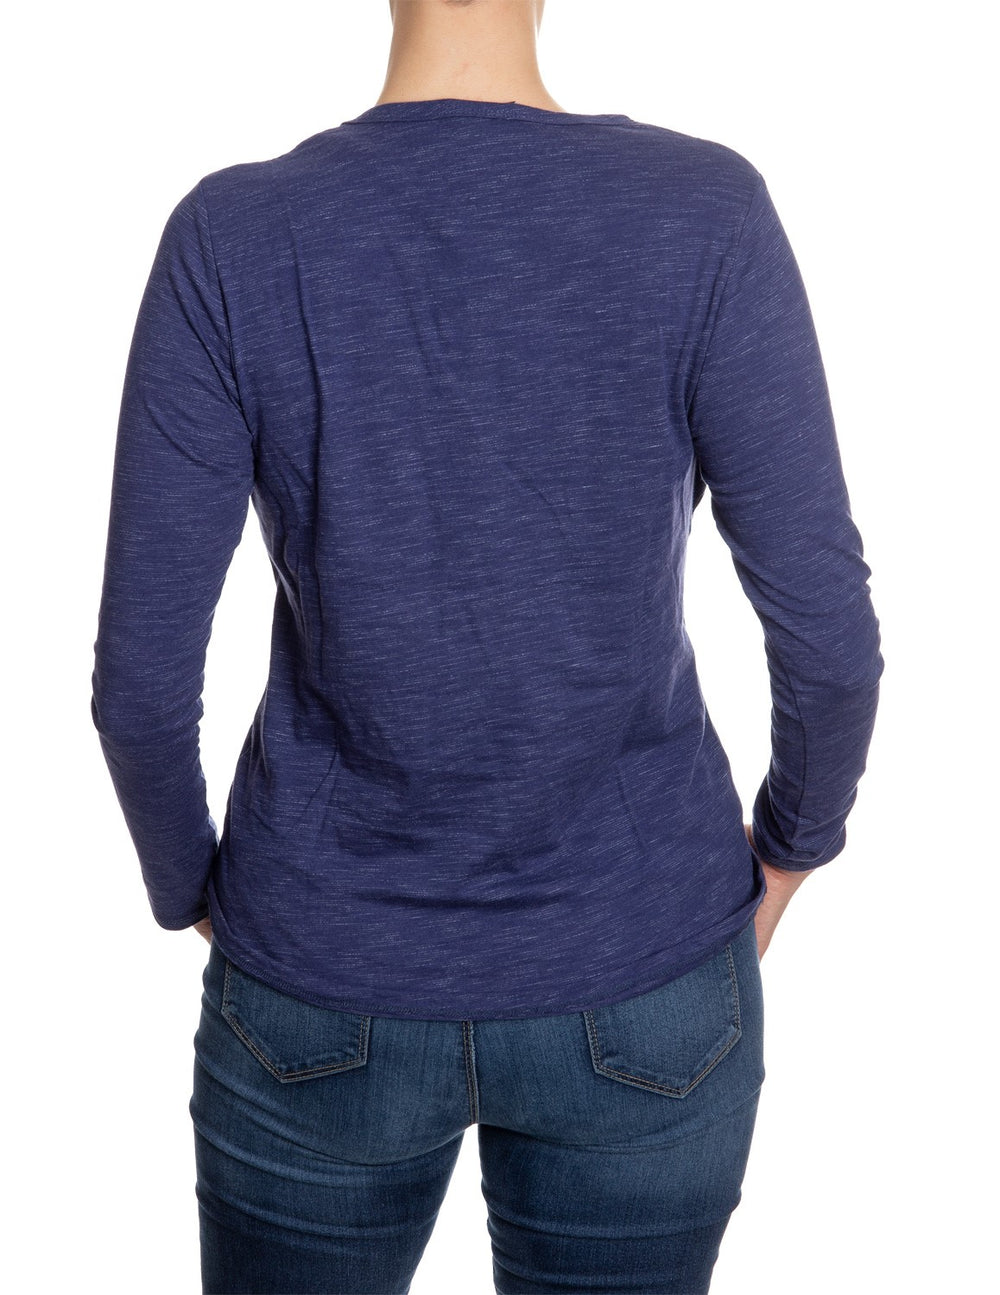 Seattle Kraken Long Sleeve Shirt for Women Back View